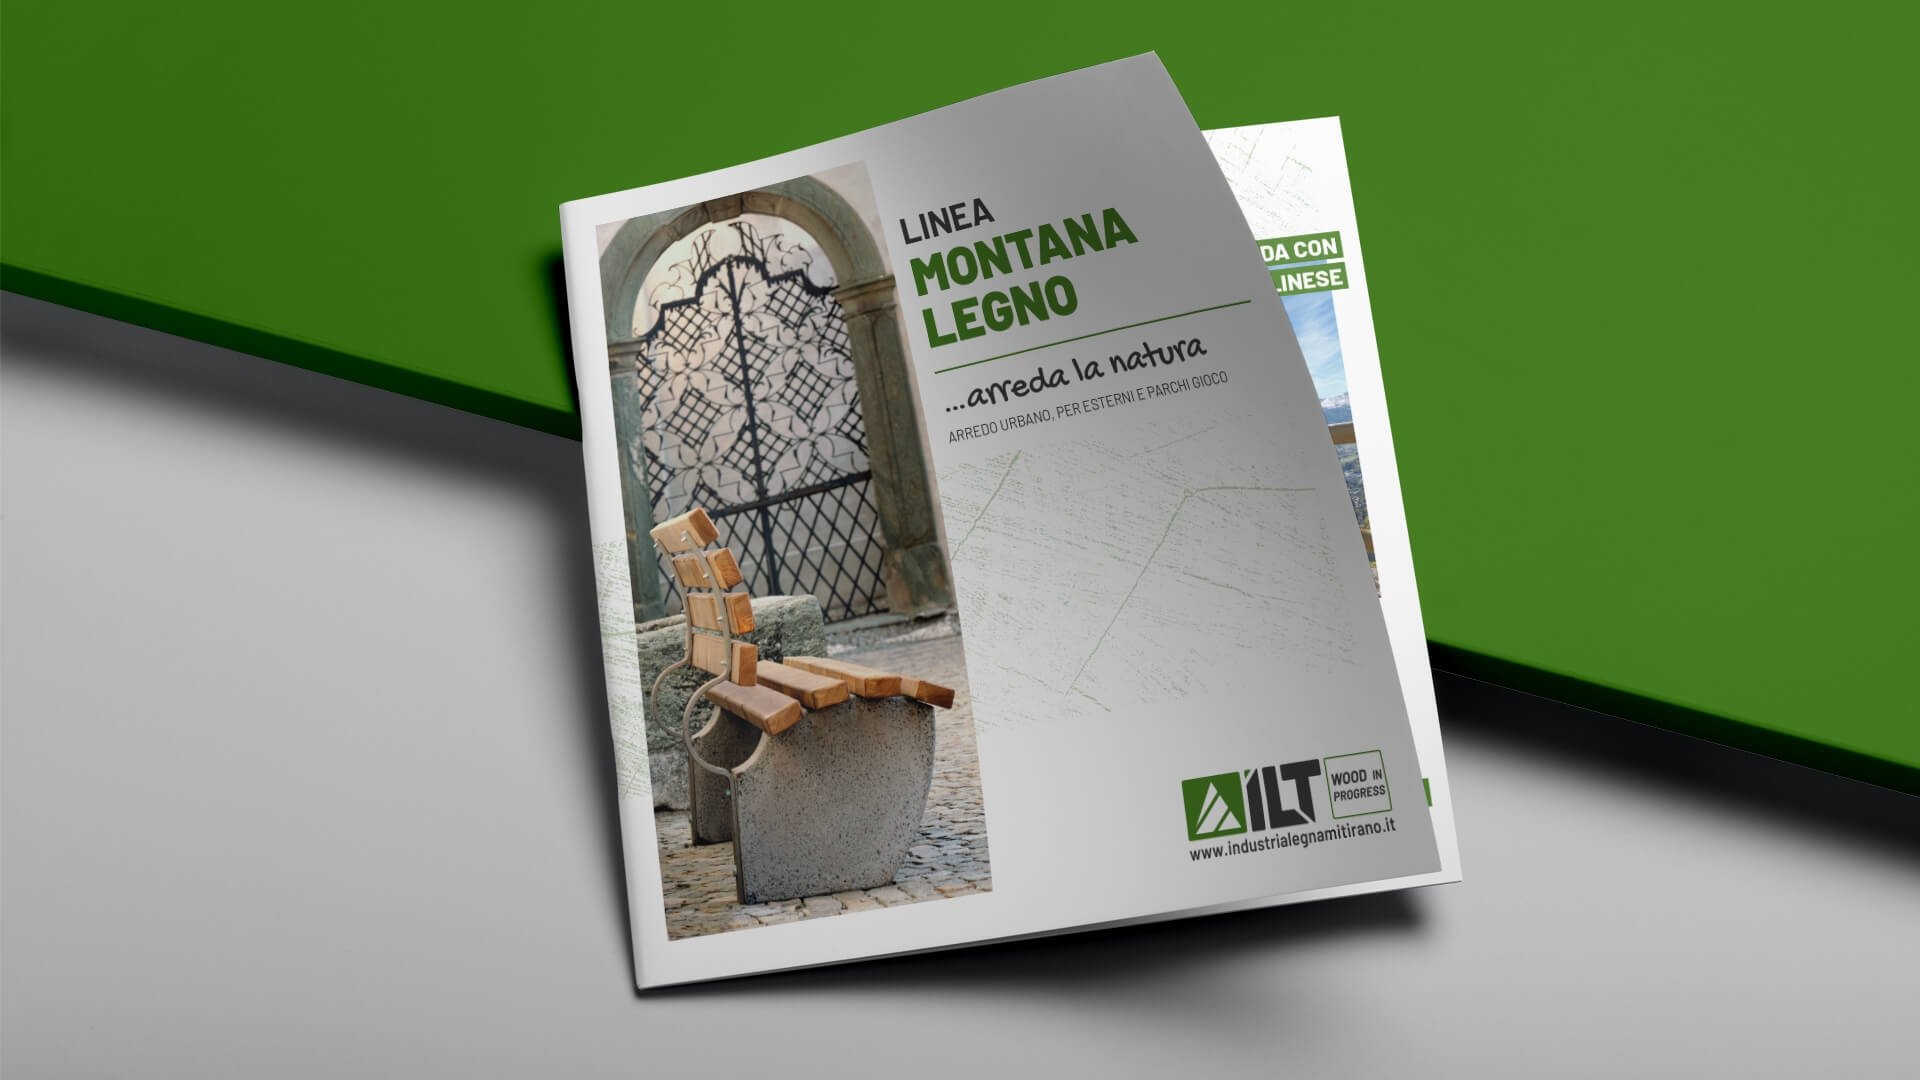 ILT Tirano e Montana Legno: immagine coordinata